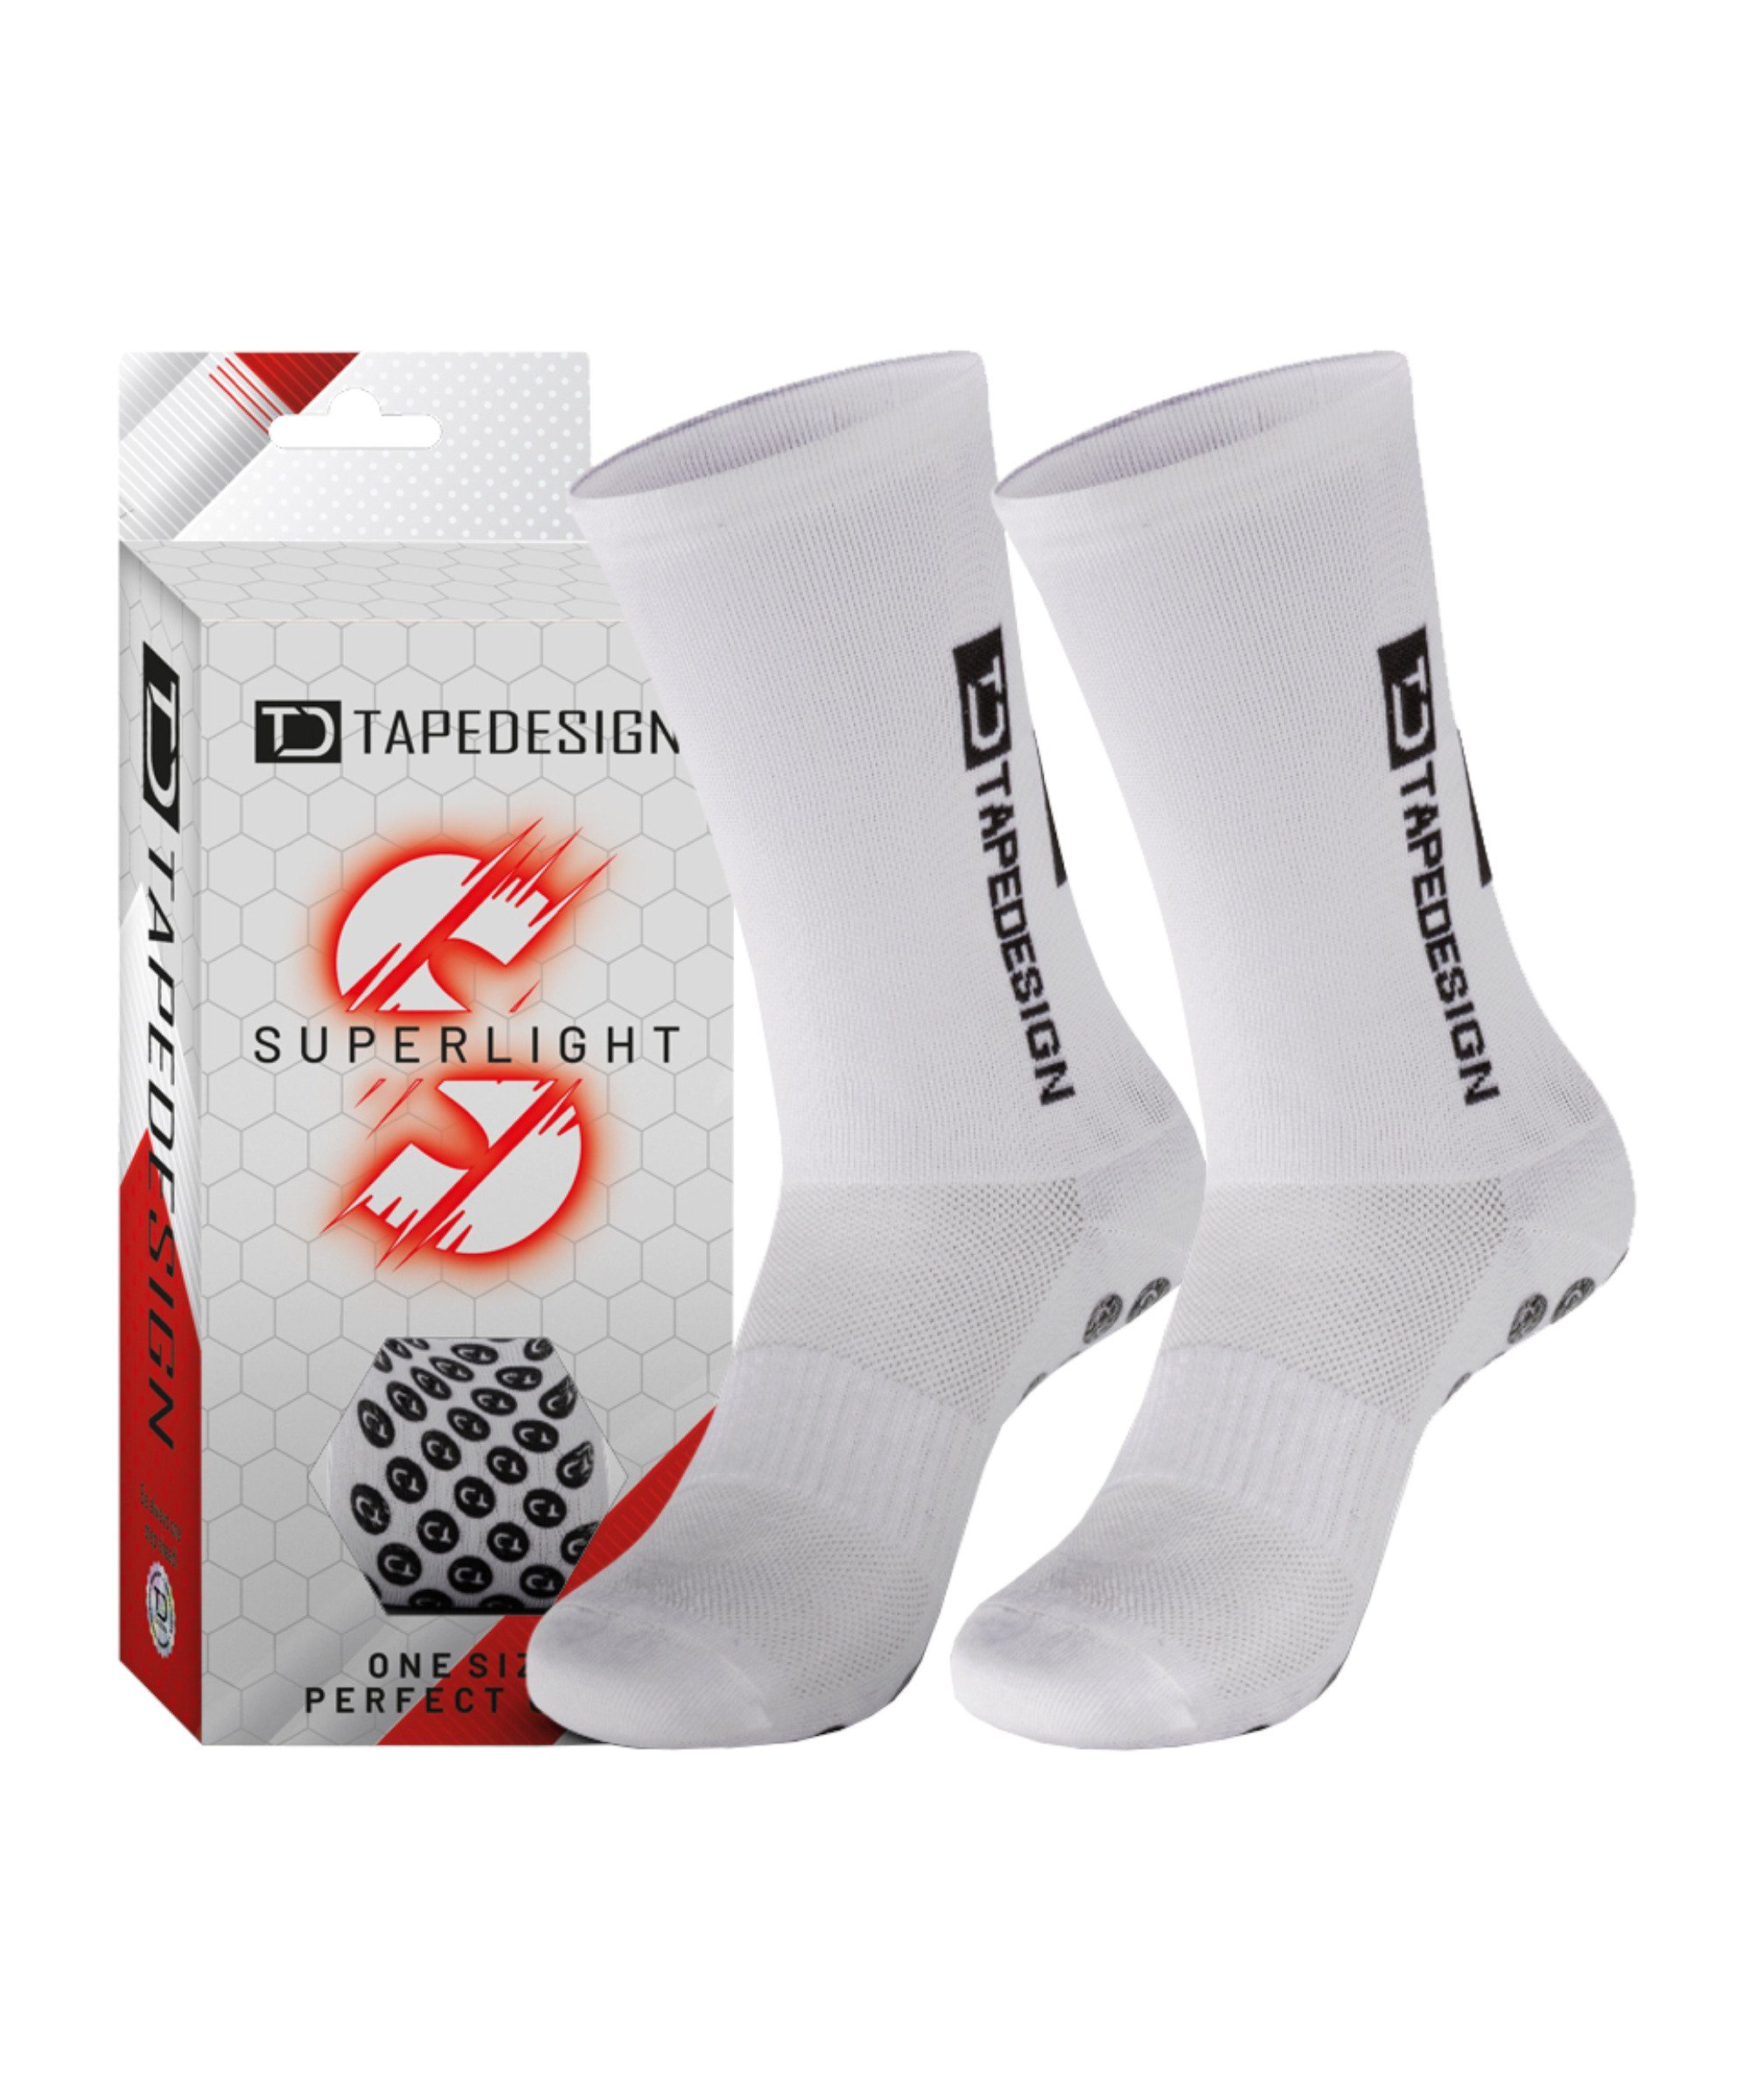 Tapedesign Sportsocken Gripsocks Superlight Socken default